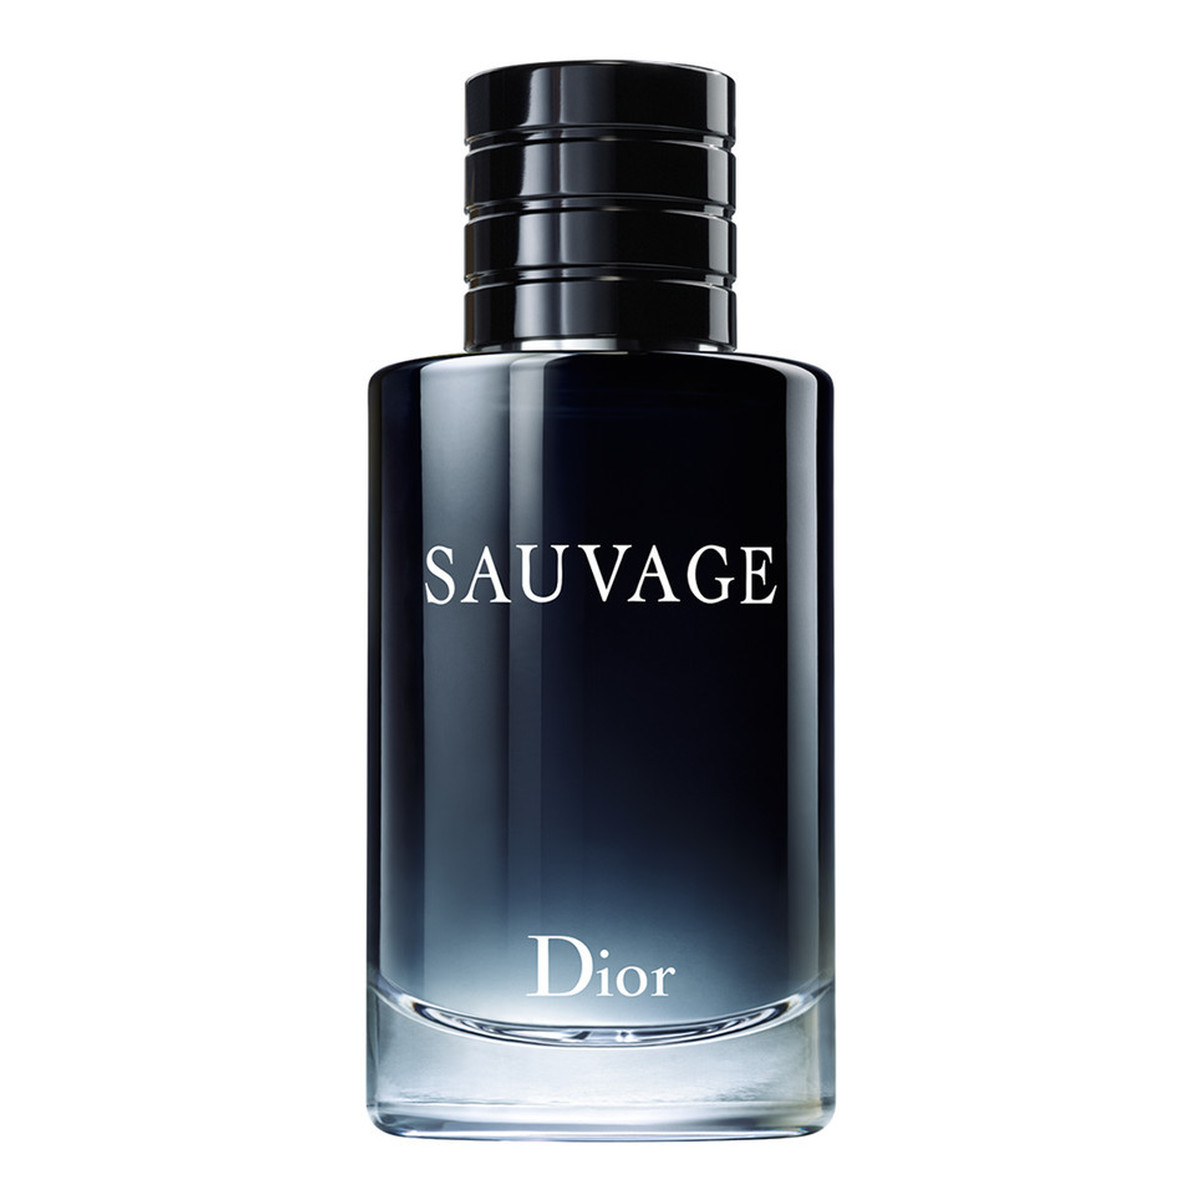 Dior Sauvage woda toaletowa dla mężczyzn 60ml